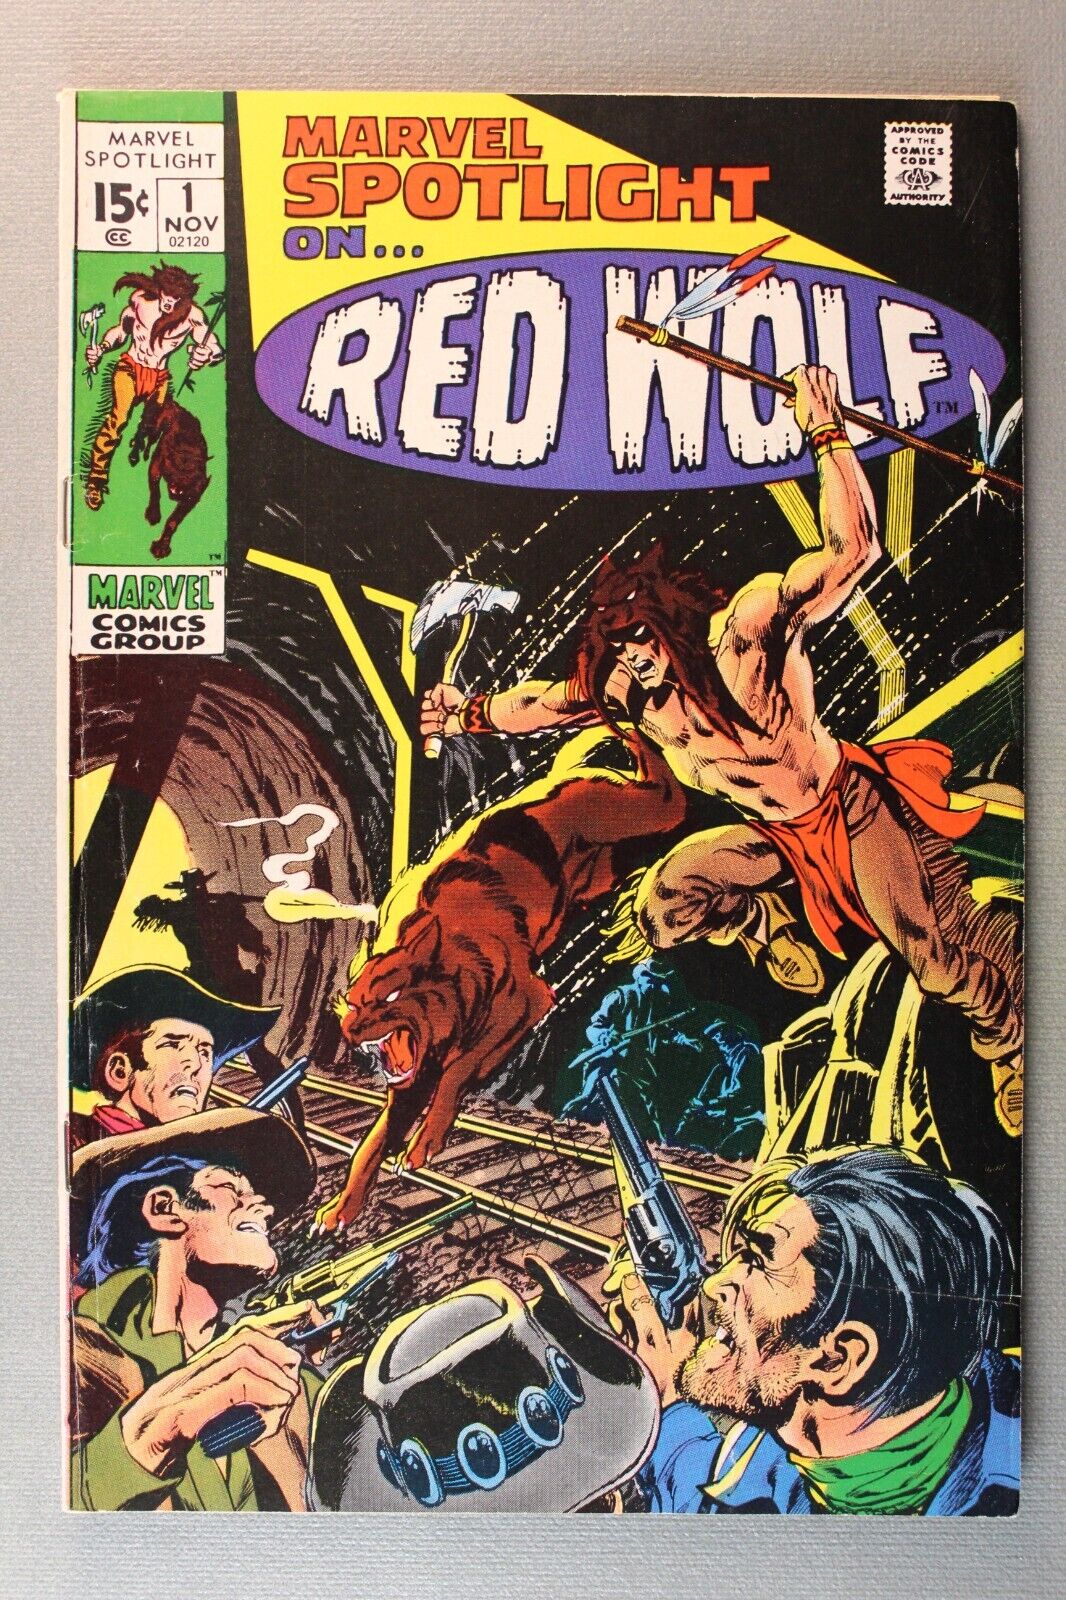 Marvel Spotlight #1 *1971* RED WOLF ~ Gardner Fox, Story ~ Syd Shores, Art